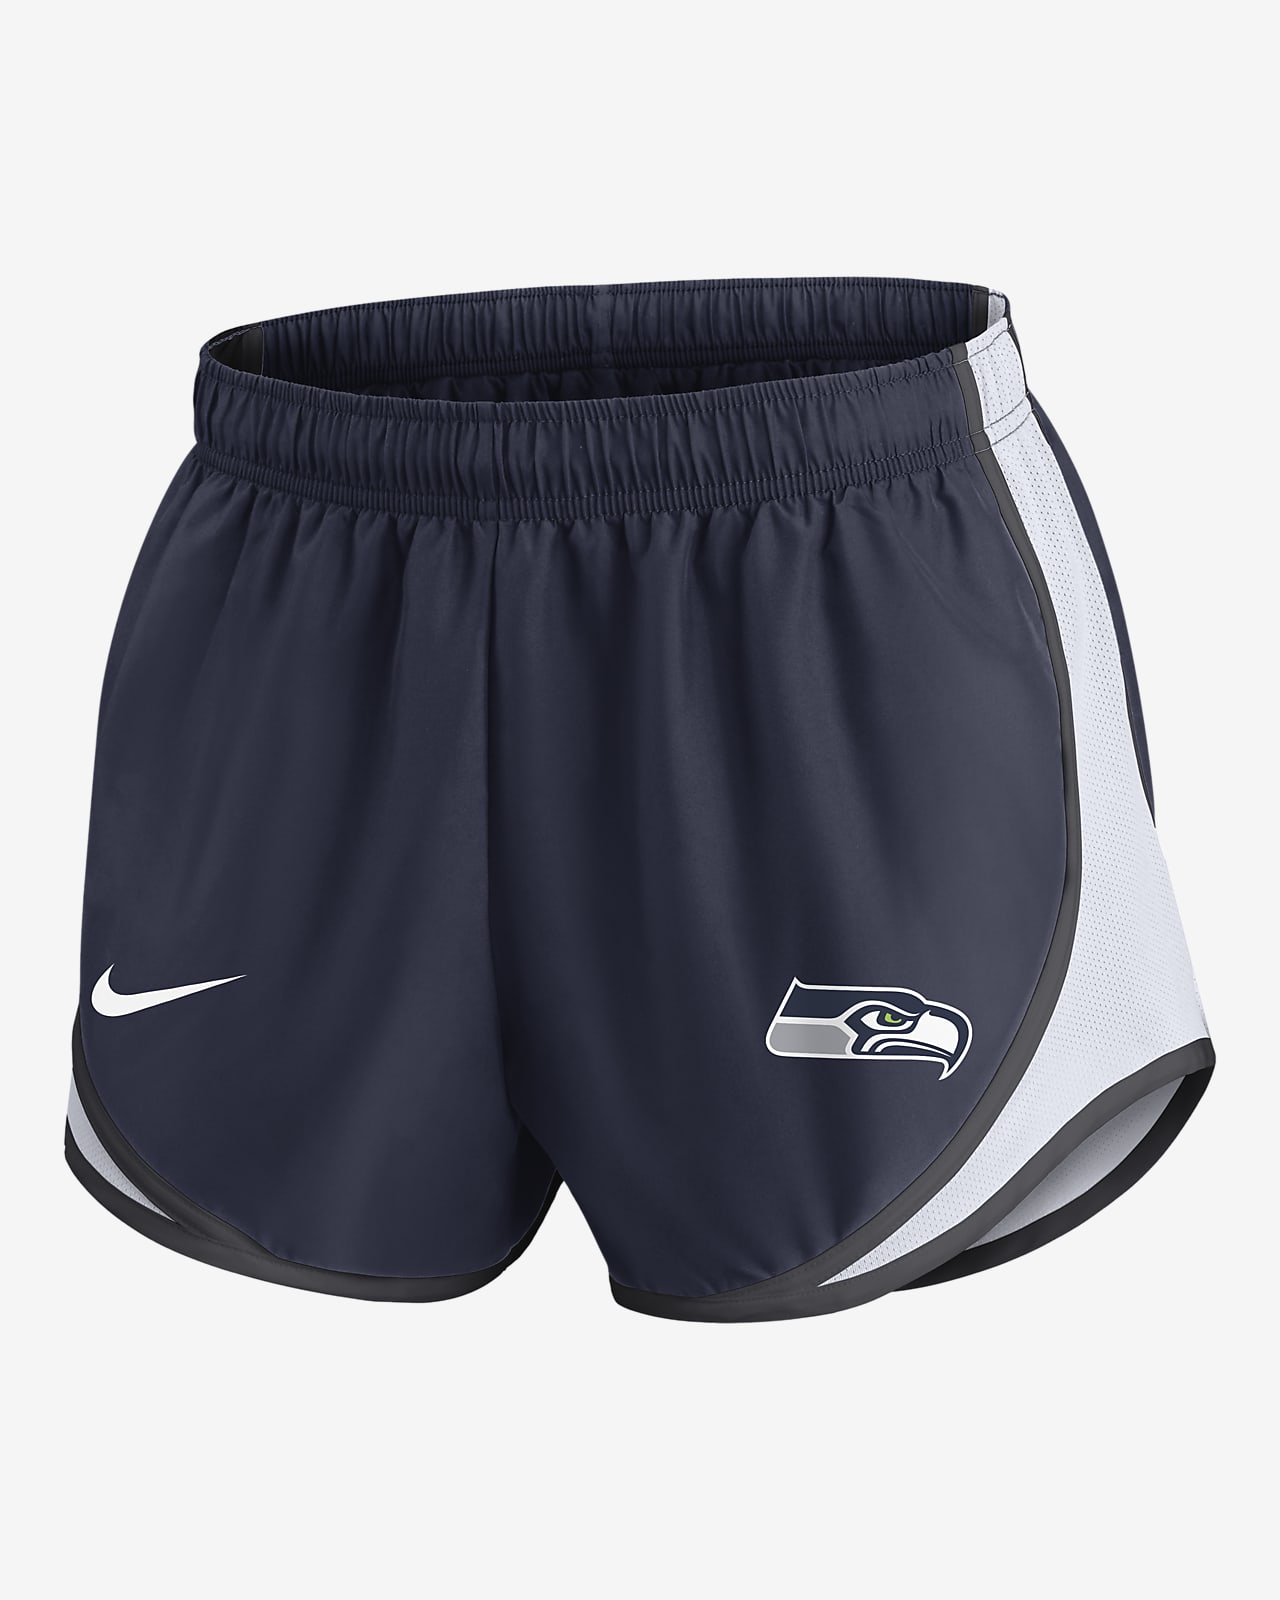 Nike Dri-FIT Tempo (NFL Seattle Seahawks) Women's Shorts.